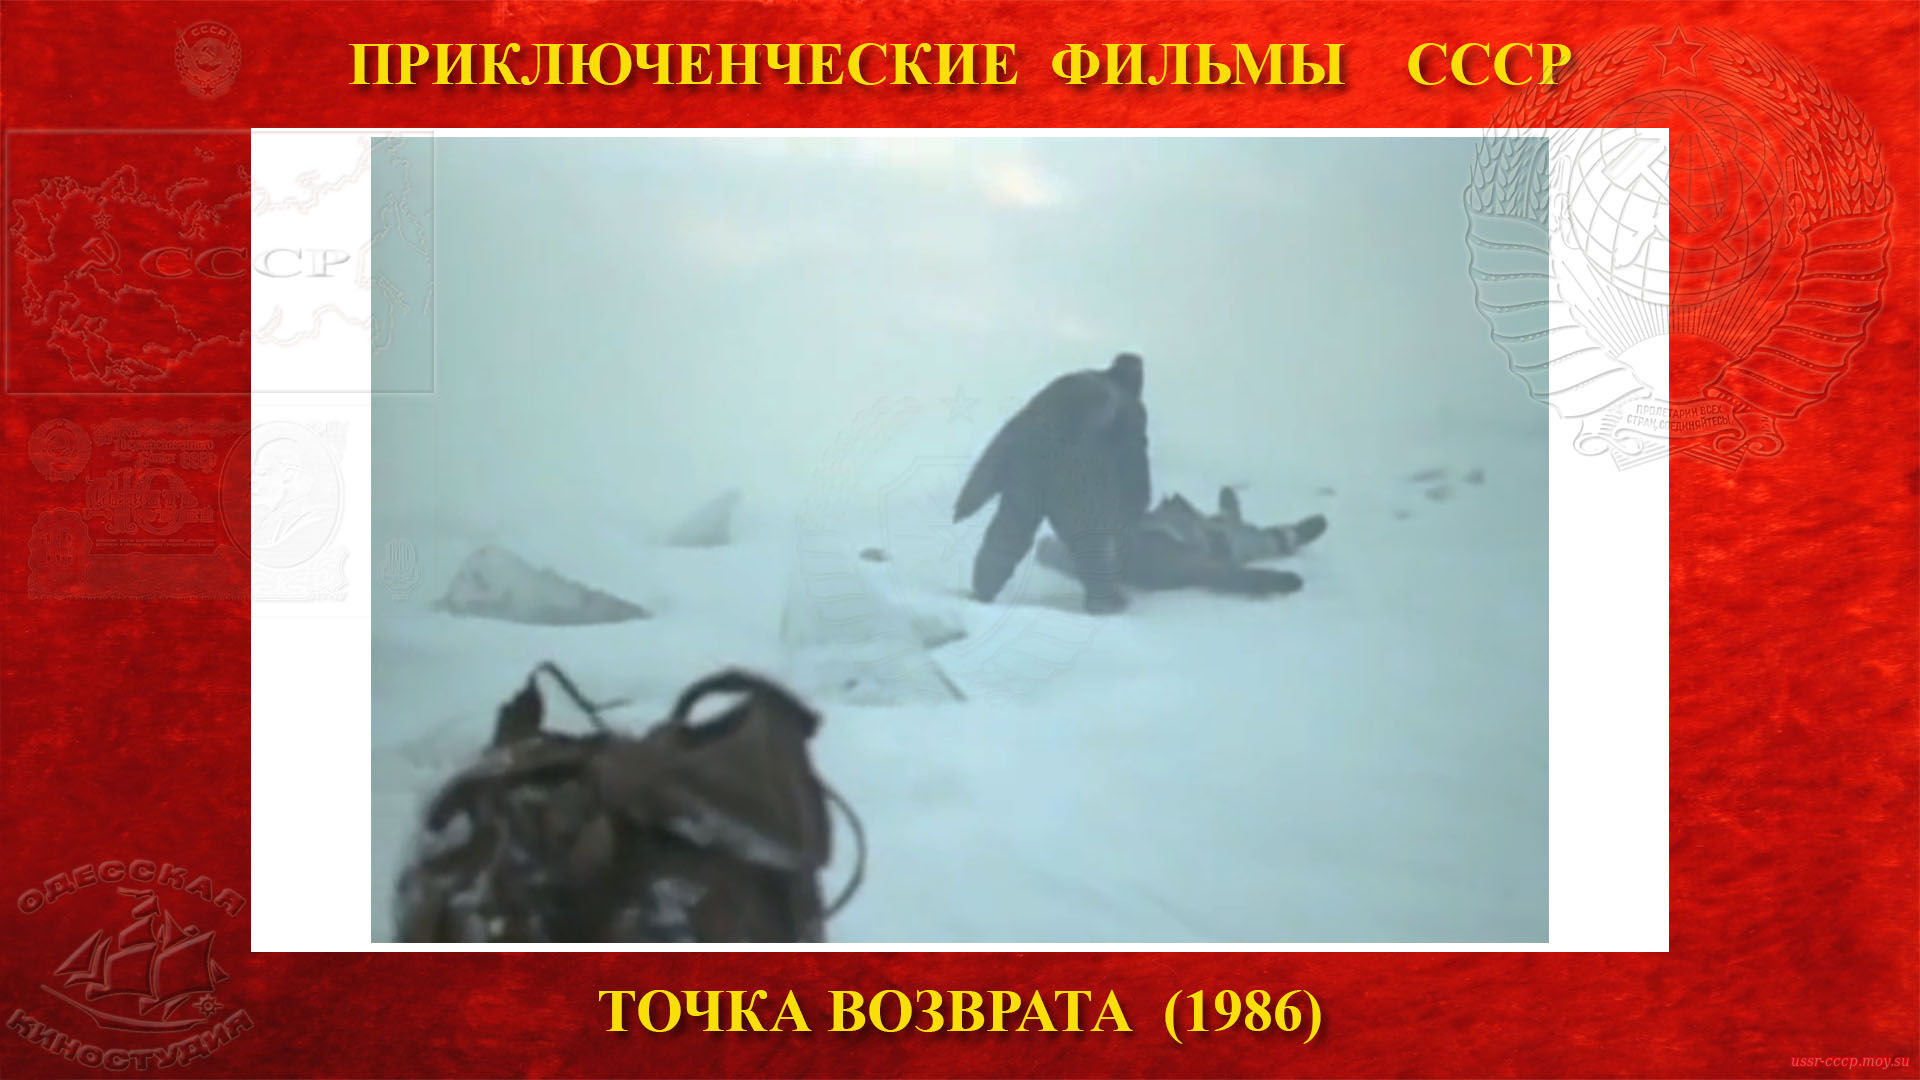 Точка возврата — Игорь Шавлак уходит из избы и находит замерзающего Дмитрия, который возвращался с Медвежьего с рюкзаком продуктов, тащит по очереди то рюкзак, то Дмитрия.